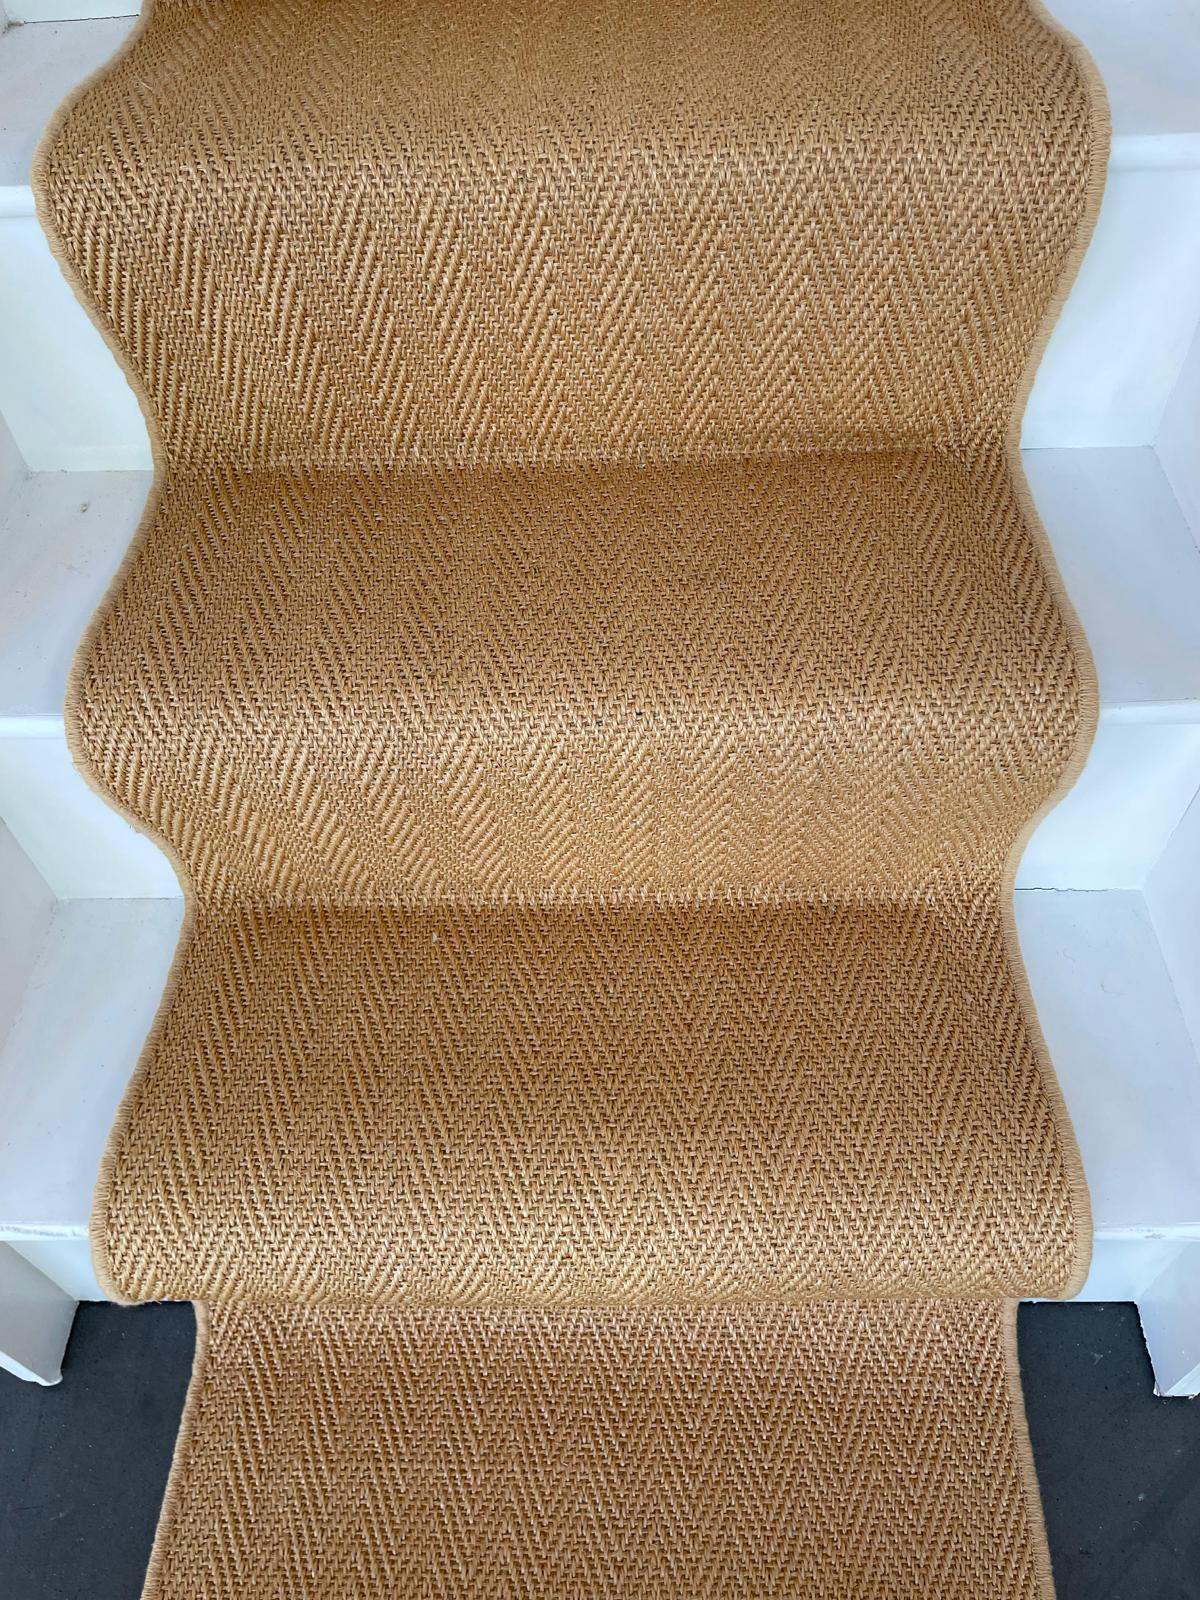 Golden sisal herringbone carpet stair runner from Alternative Flooring Hampton range